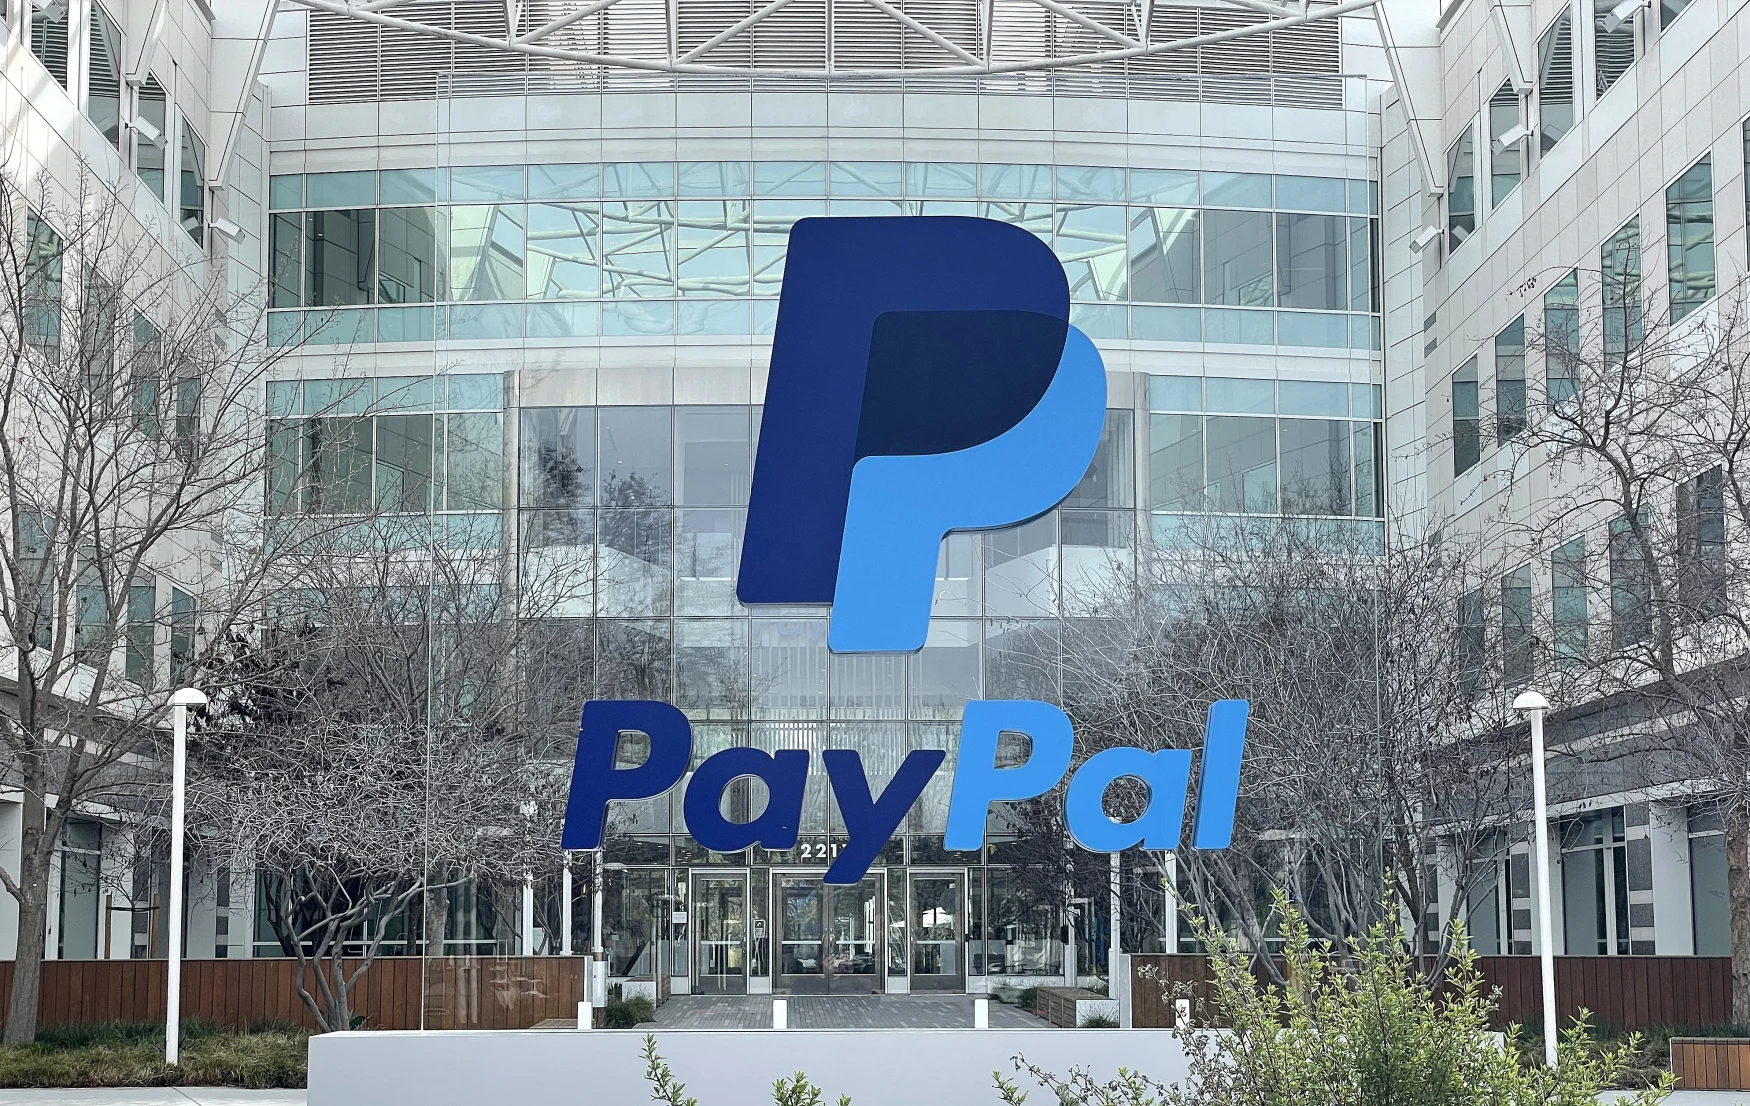 سان خوسيه ، كاليفورنيا - 02 فبراير: تم وضع لافتة أمام المقر الرئيسي لشركة PayPal في 02 فبراير 2023 في سان خوسيه ، كاليفورنيا.  أعلنت PayPal عن خطط لتسريح 2000 موظف ، ما يقرب من 7 في المائة من قوتها العاملة.  (تصوير جوستين سوليفان / جيتي إيماجيس)